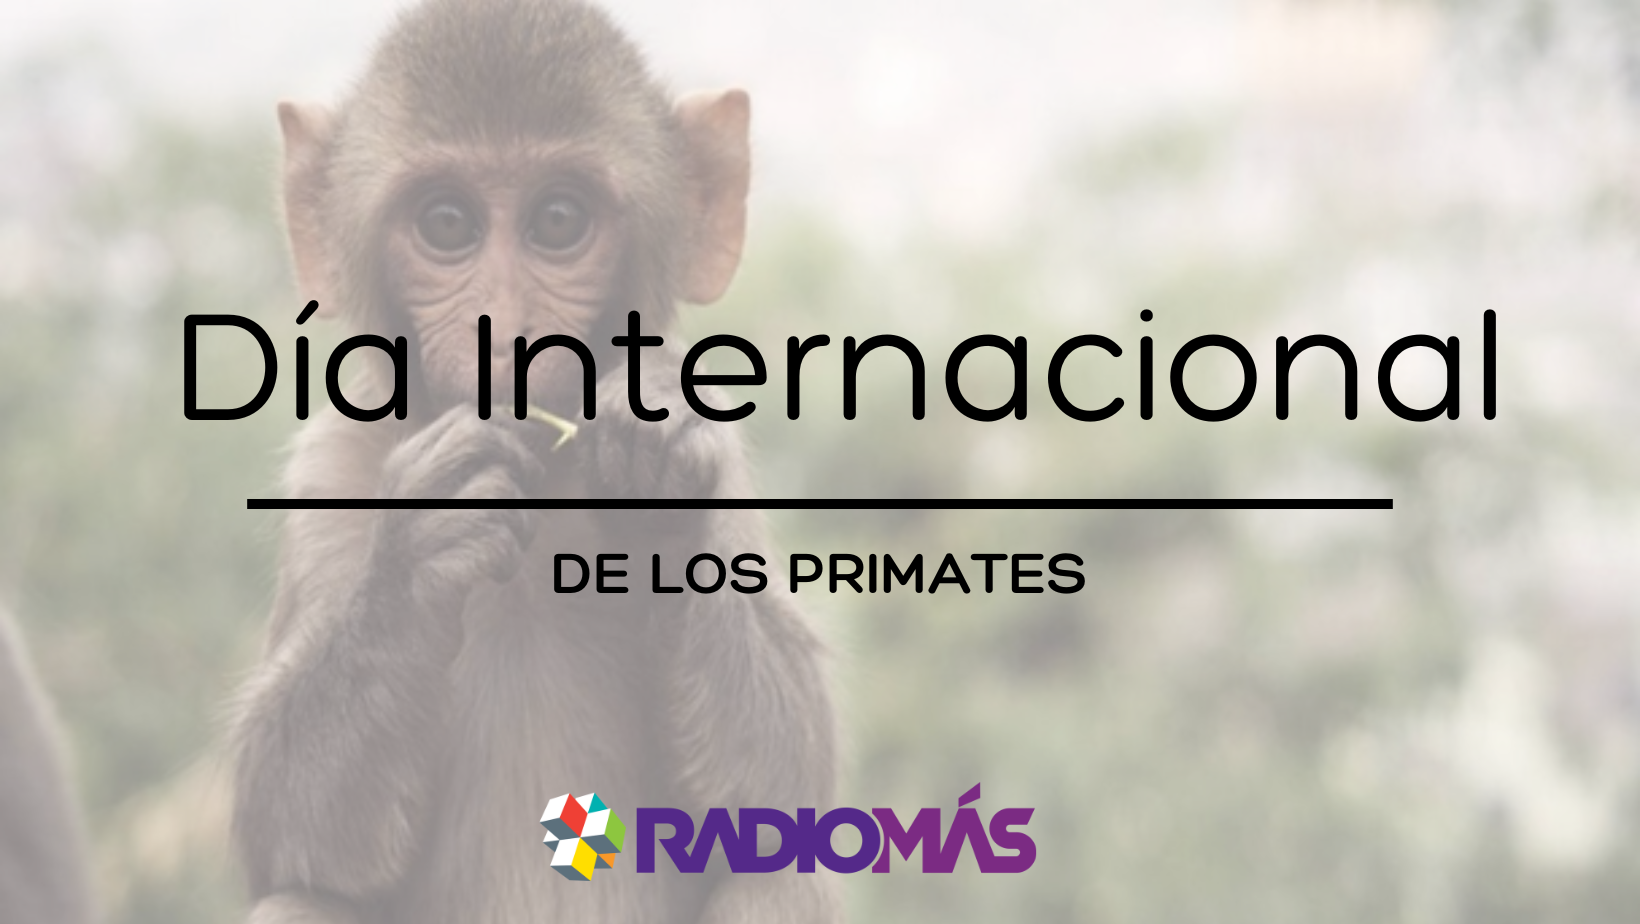 Día Internacional de los Primates